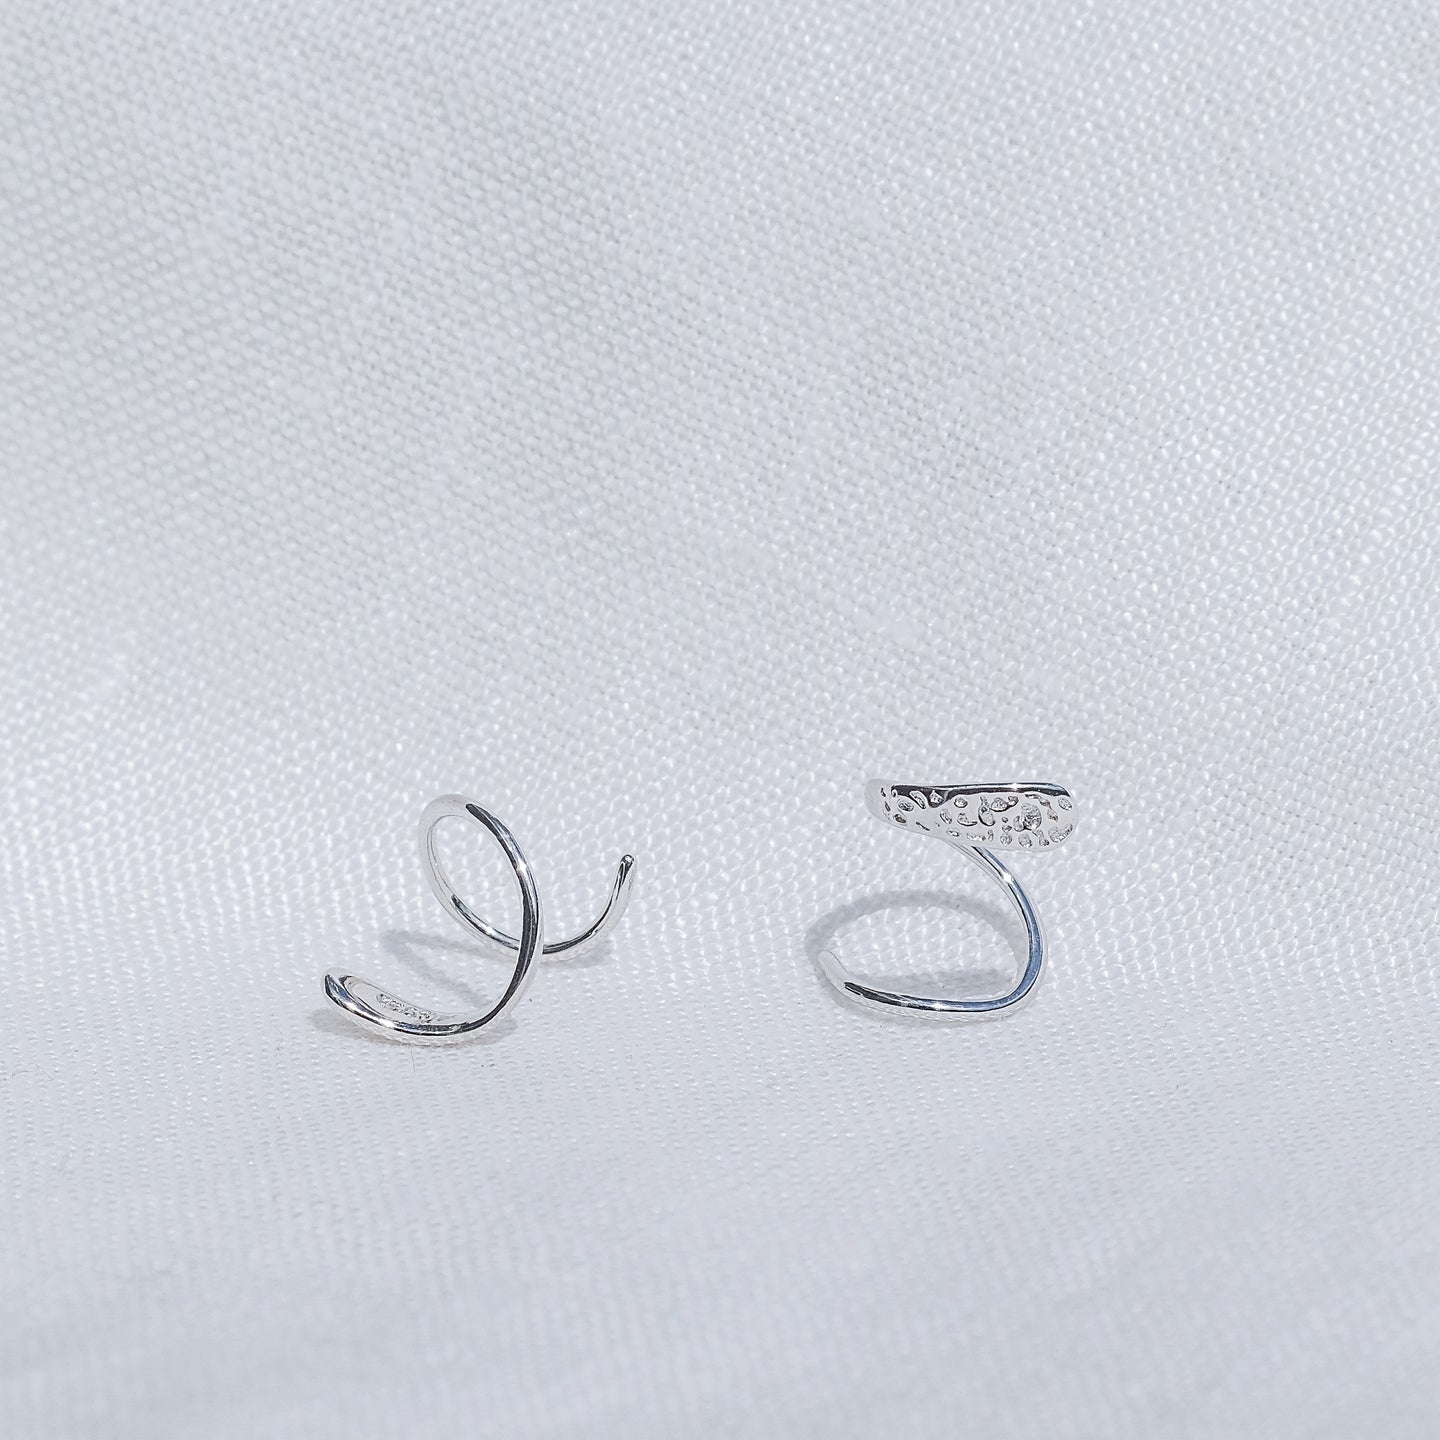 files/valen-925-sterling-silver-earrings-1.jpg